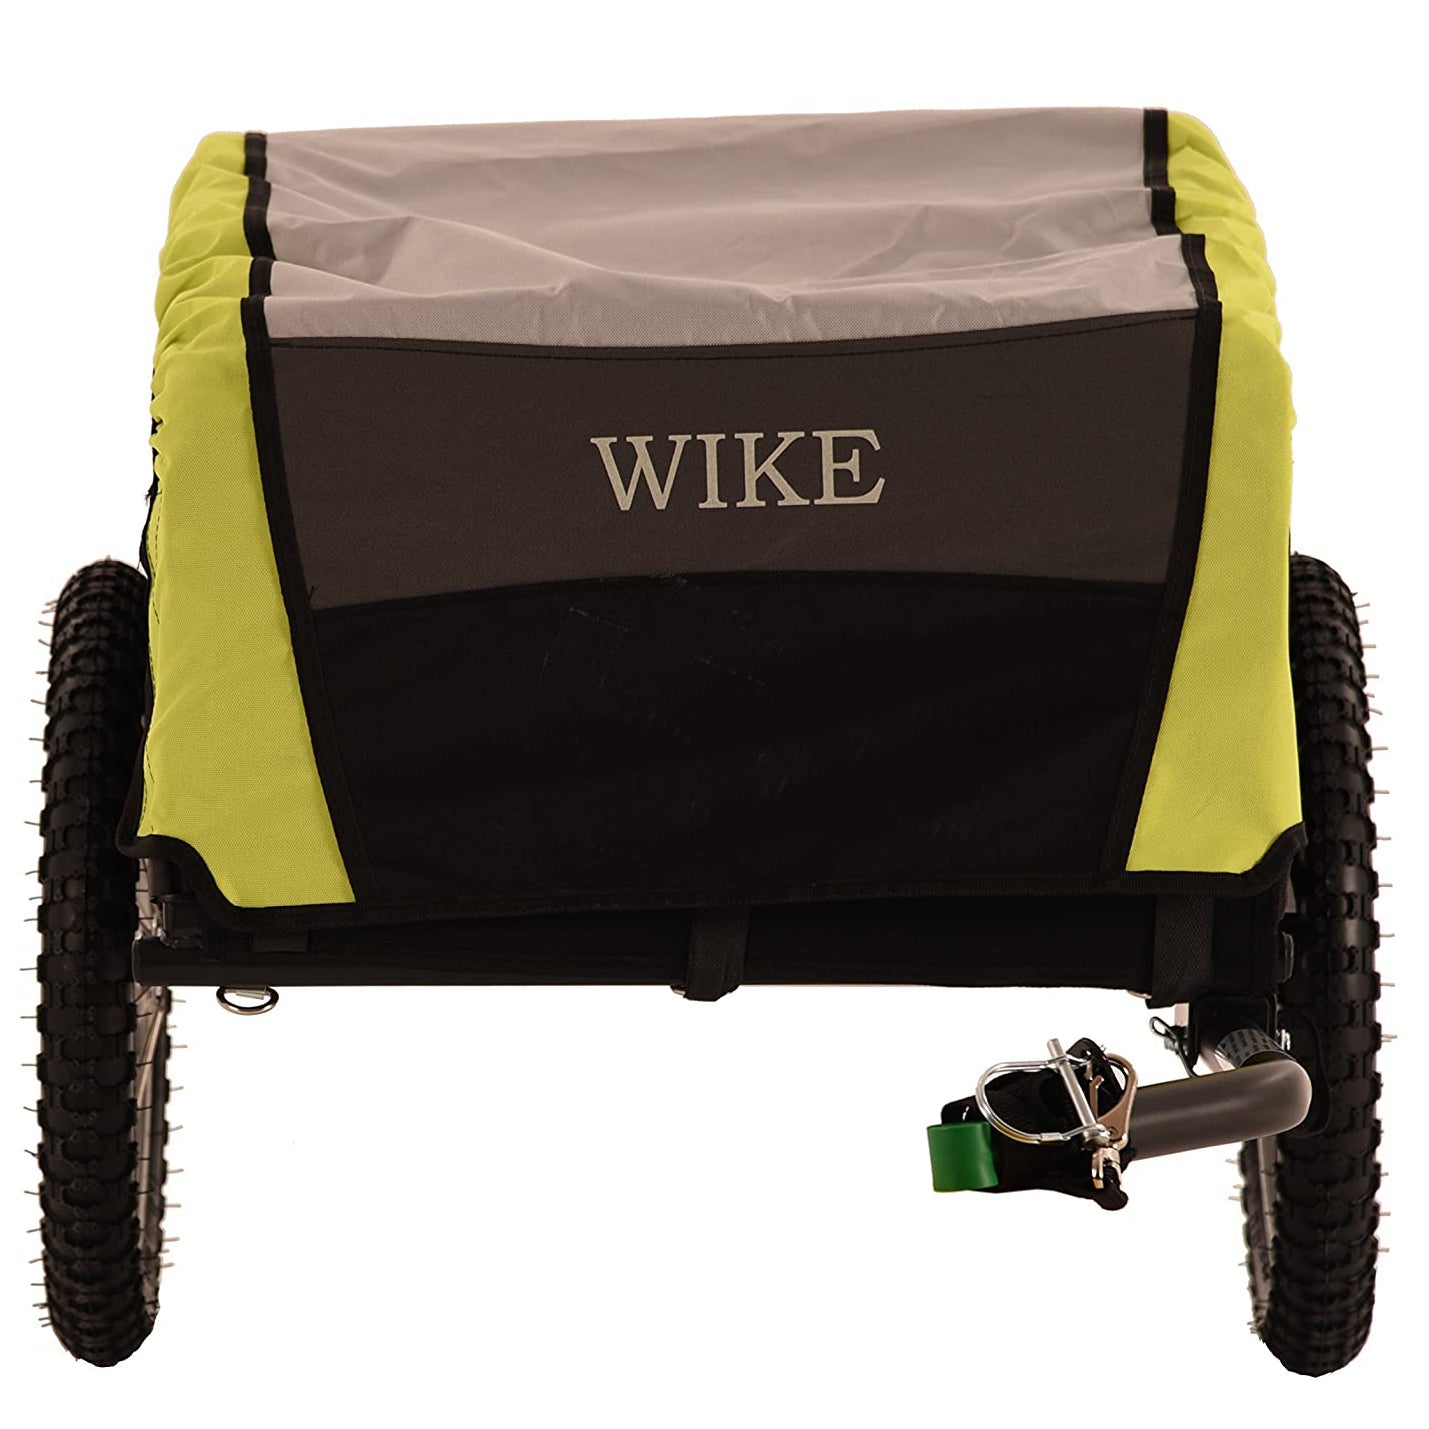 Wike City Cargo Utility Bike Trailer